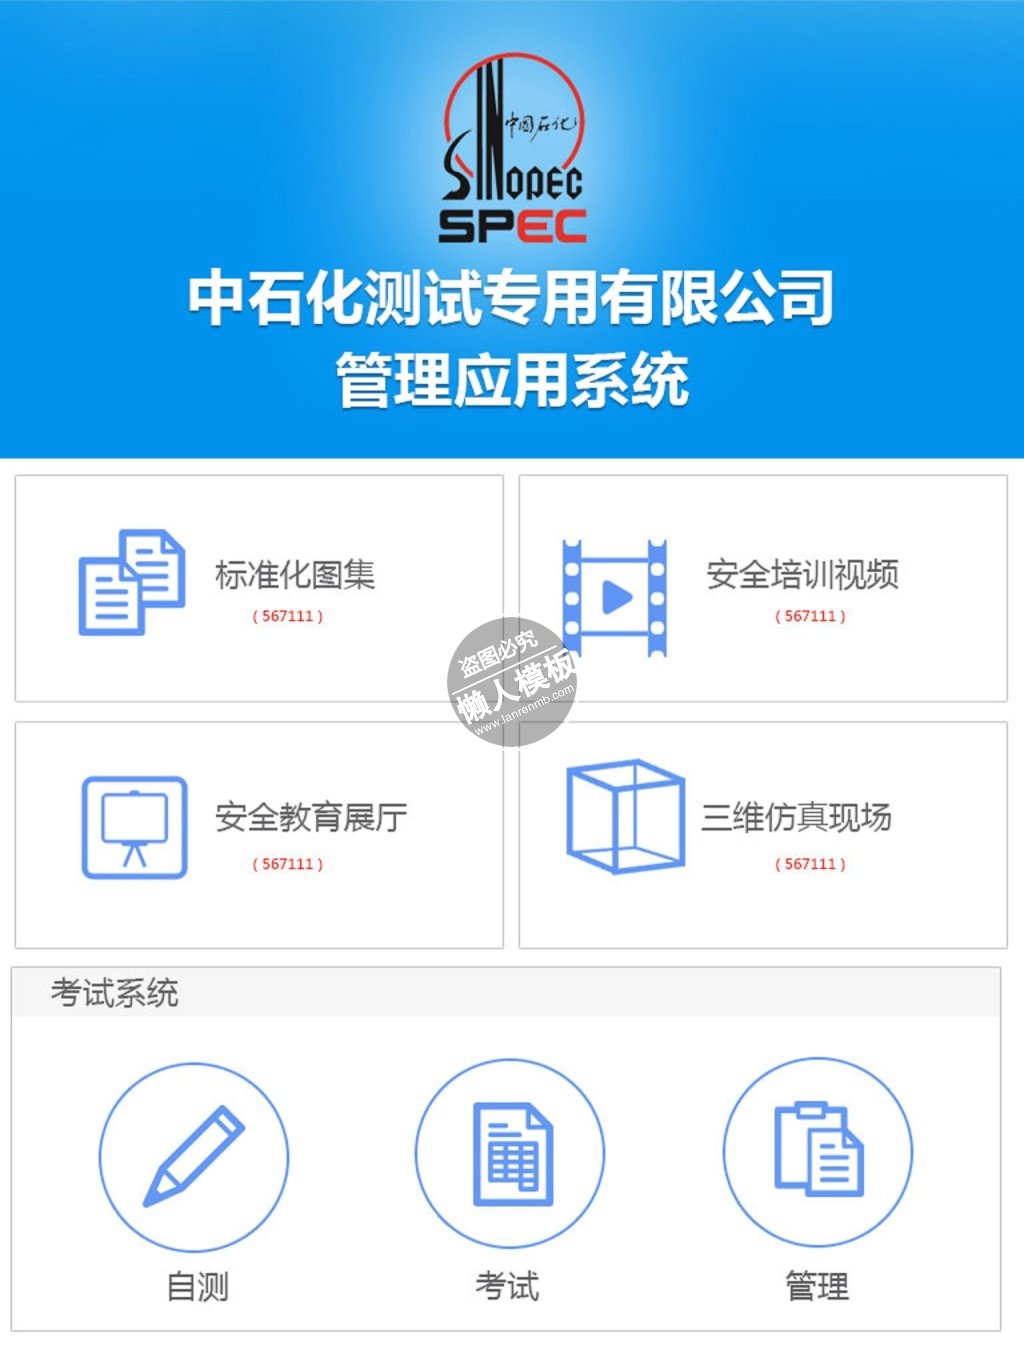 中石化管理测试系统网站ui界面设计移动端手机网页psd素材下载